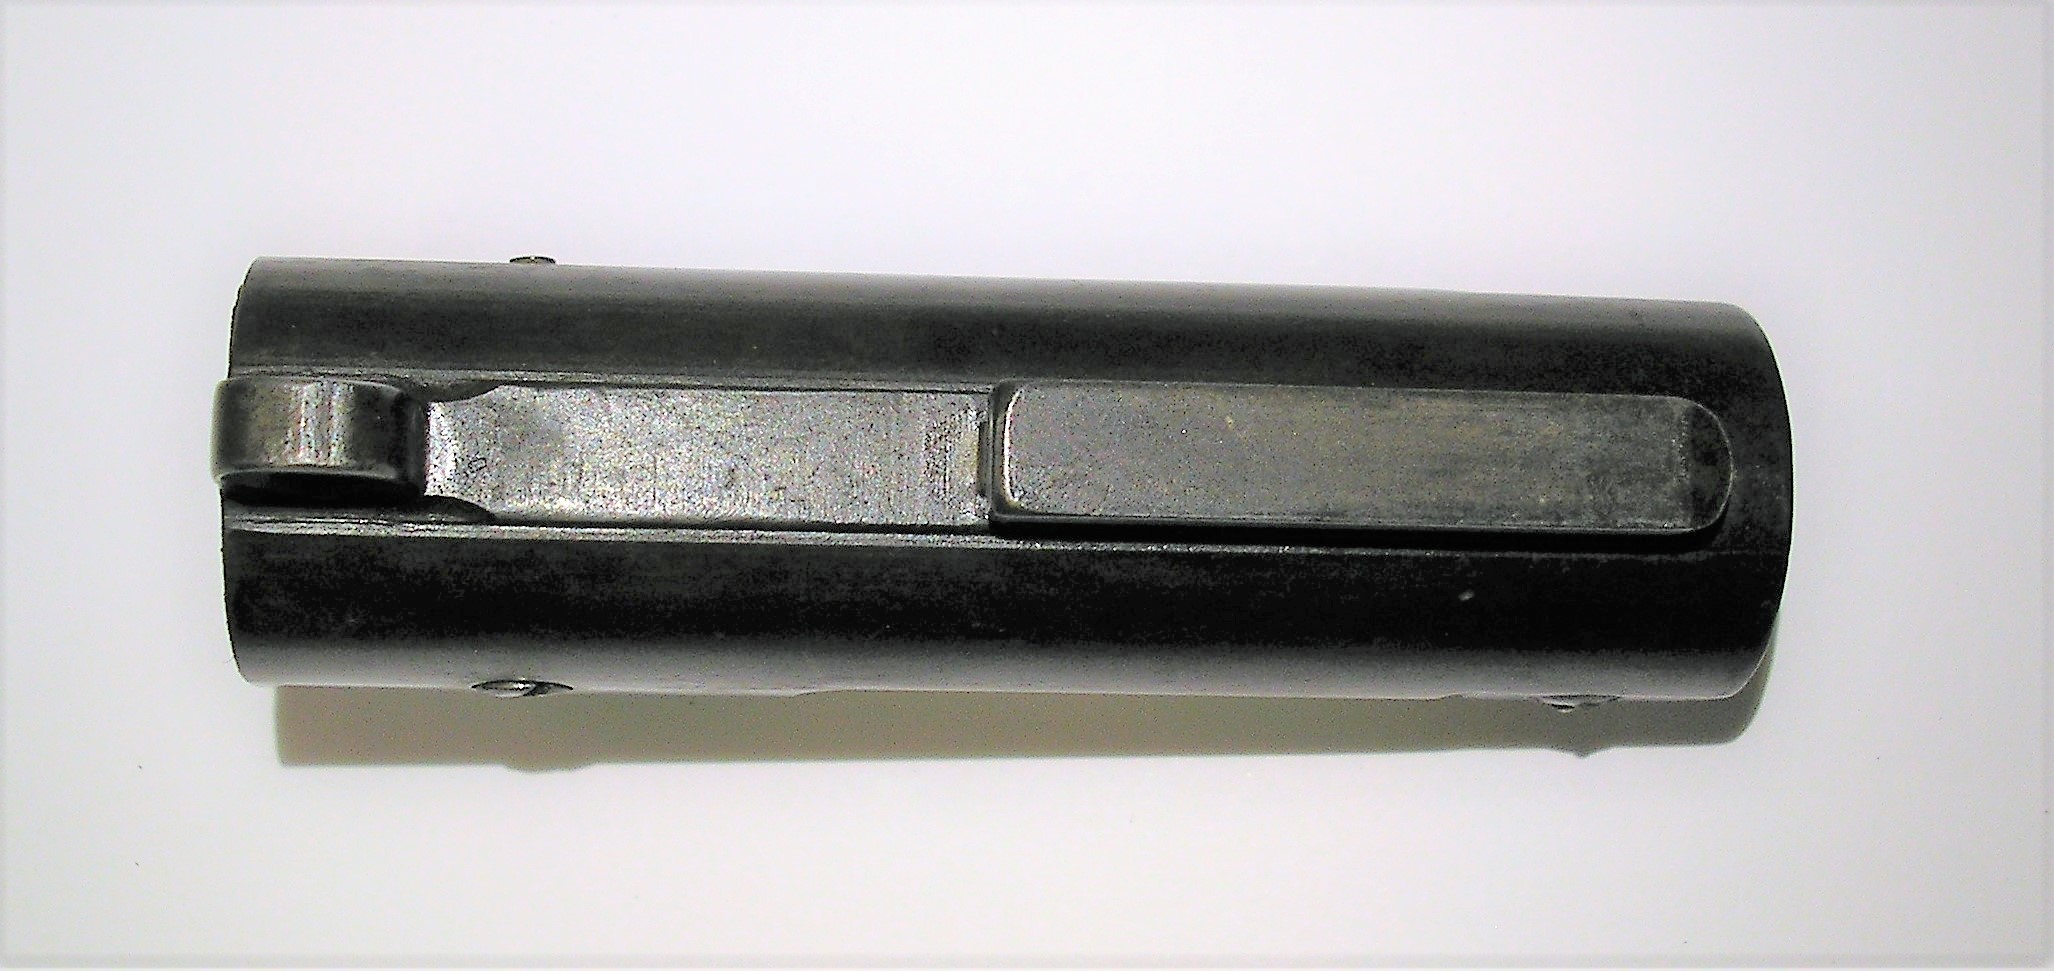 ./guns/rifle/bilder/Rifle-Kongsberg-Krag-M1912-25358-4.JPG